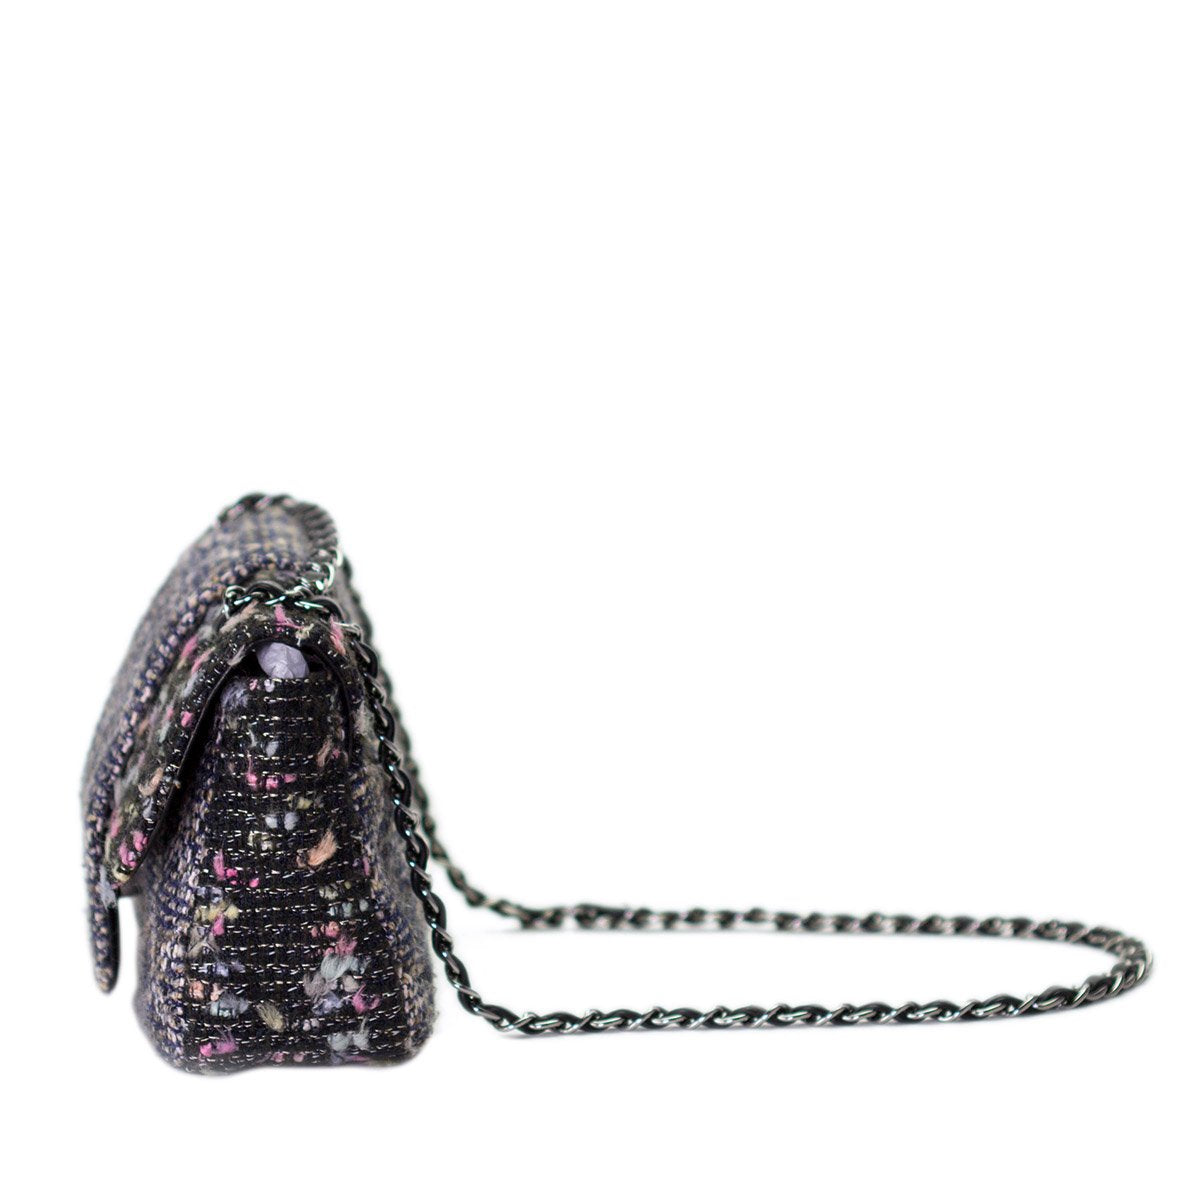 Chanel Charcoal Ultra Grey Confetti Fantasy Tweed Classic Flap Bag